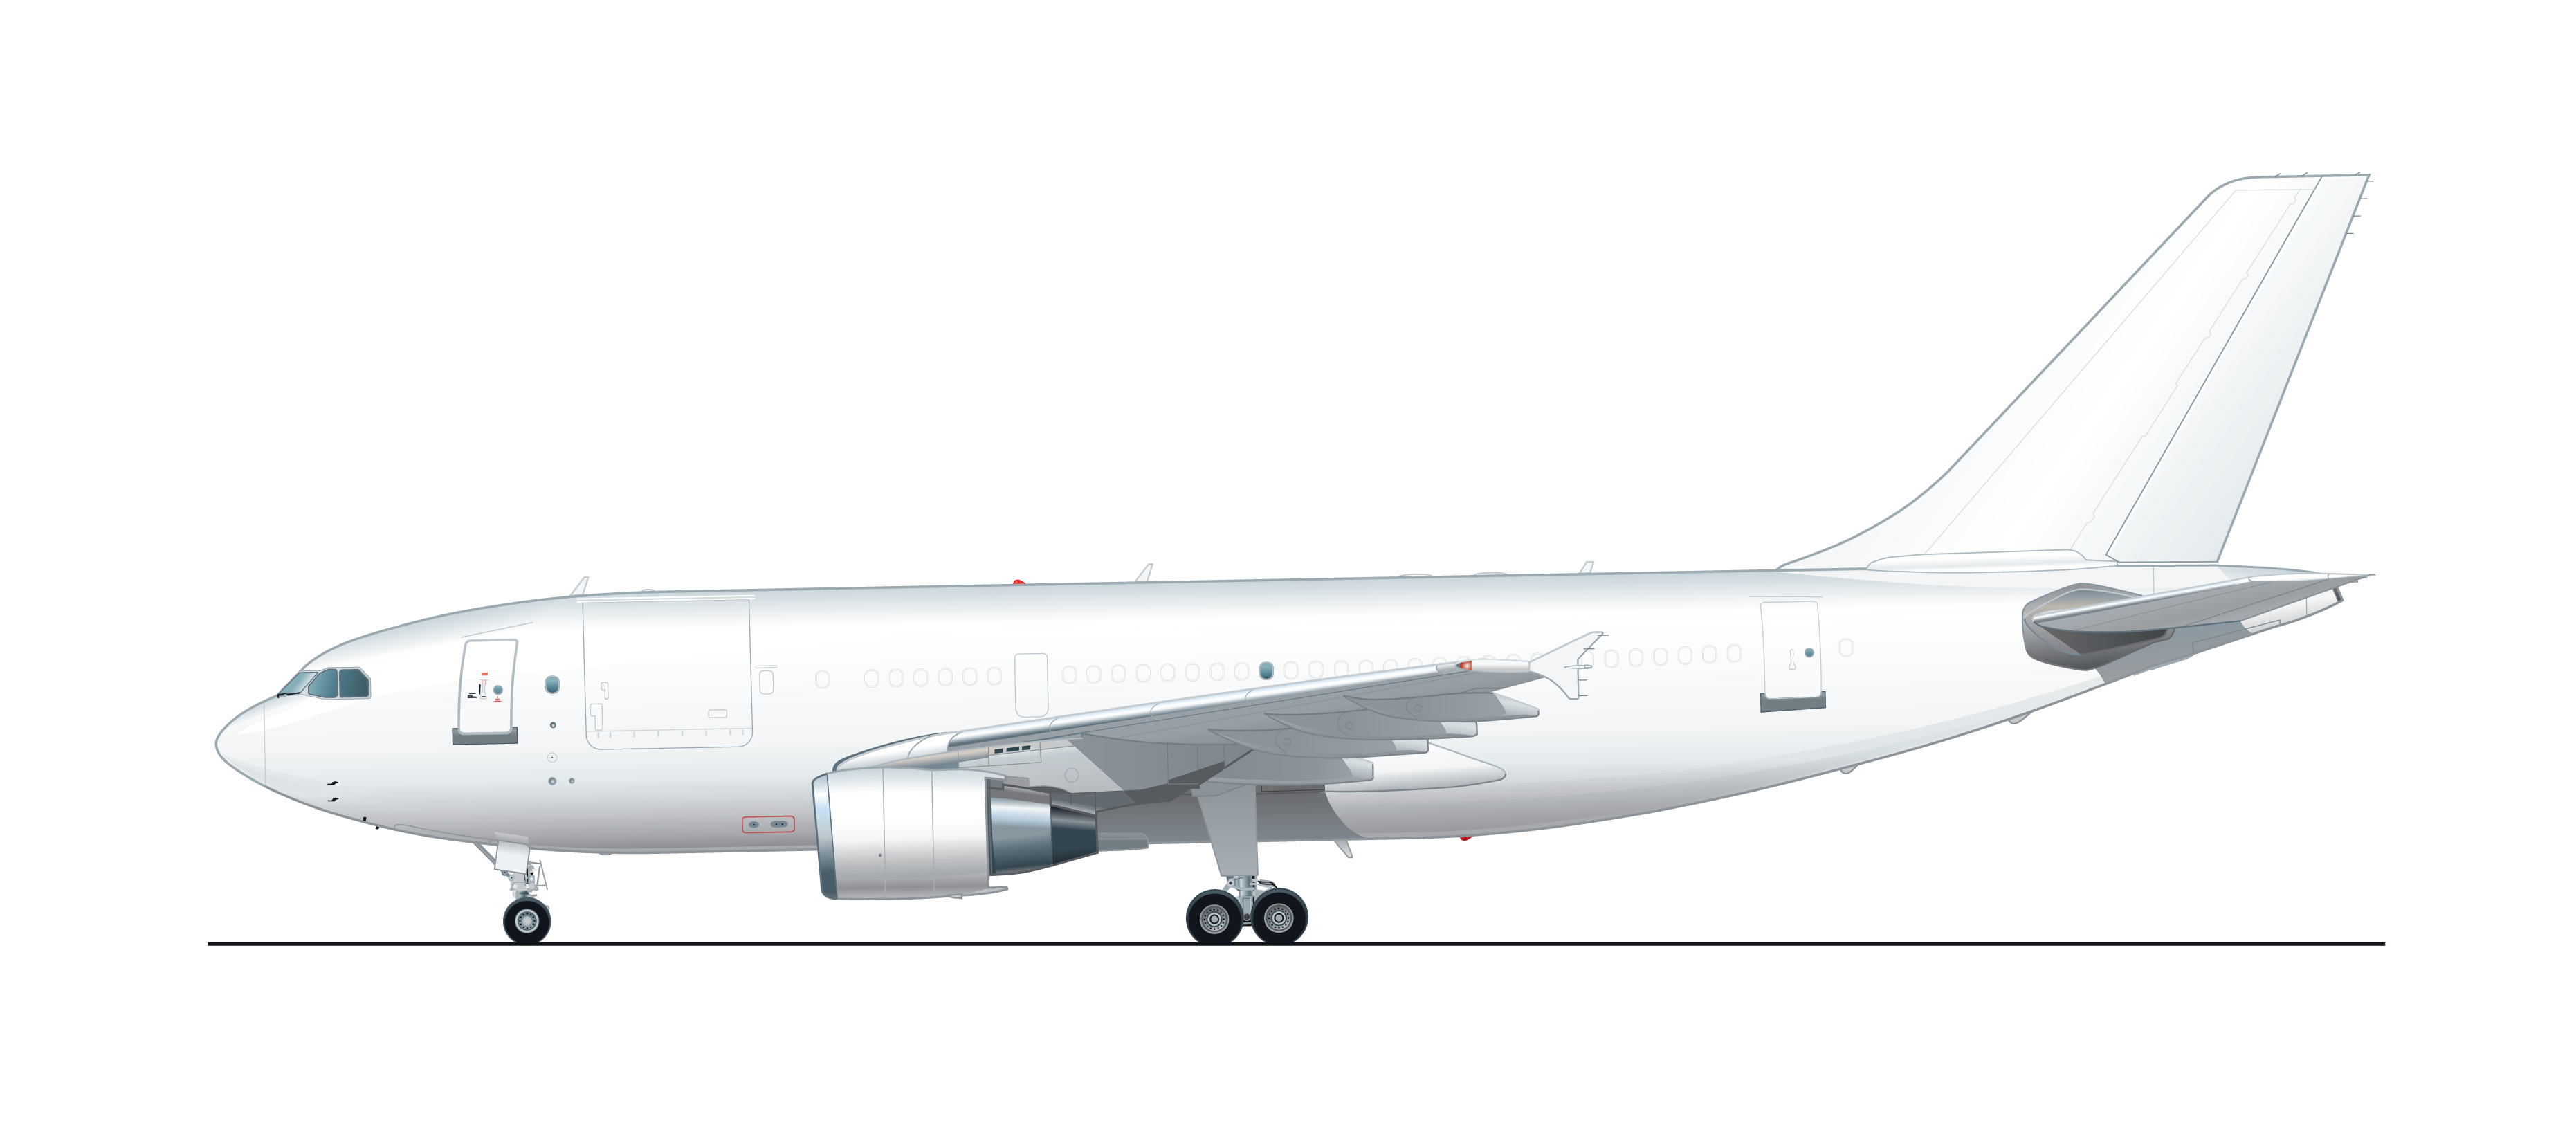 AAR A310-300F